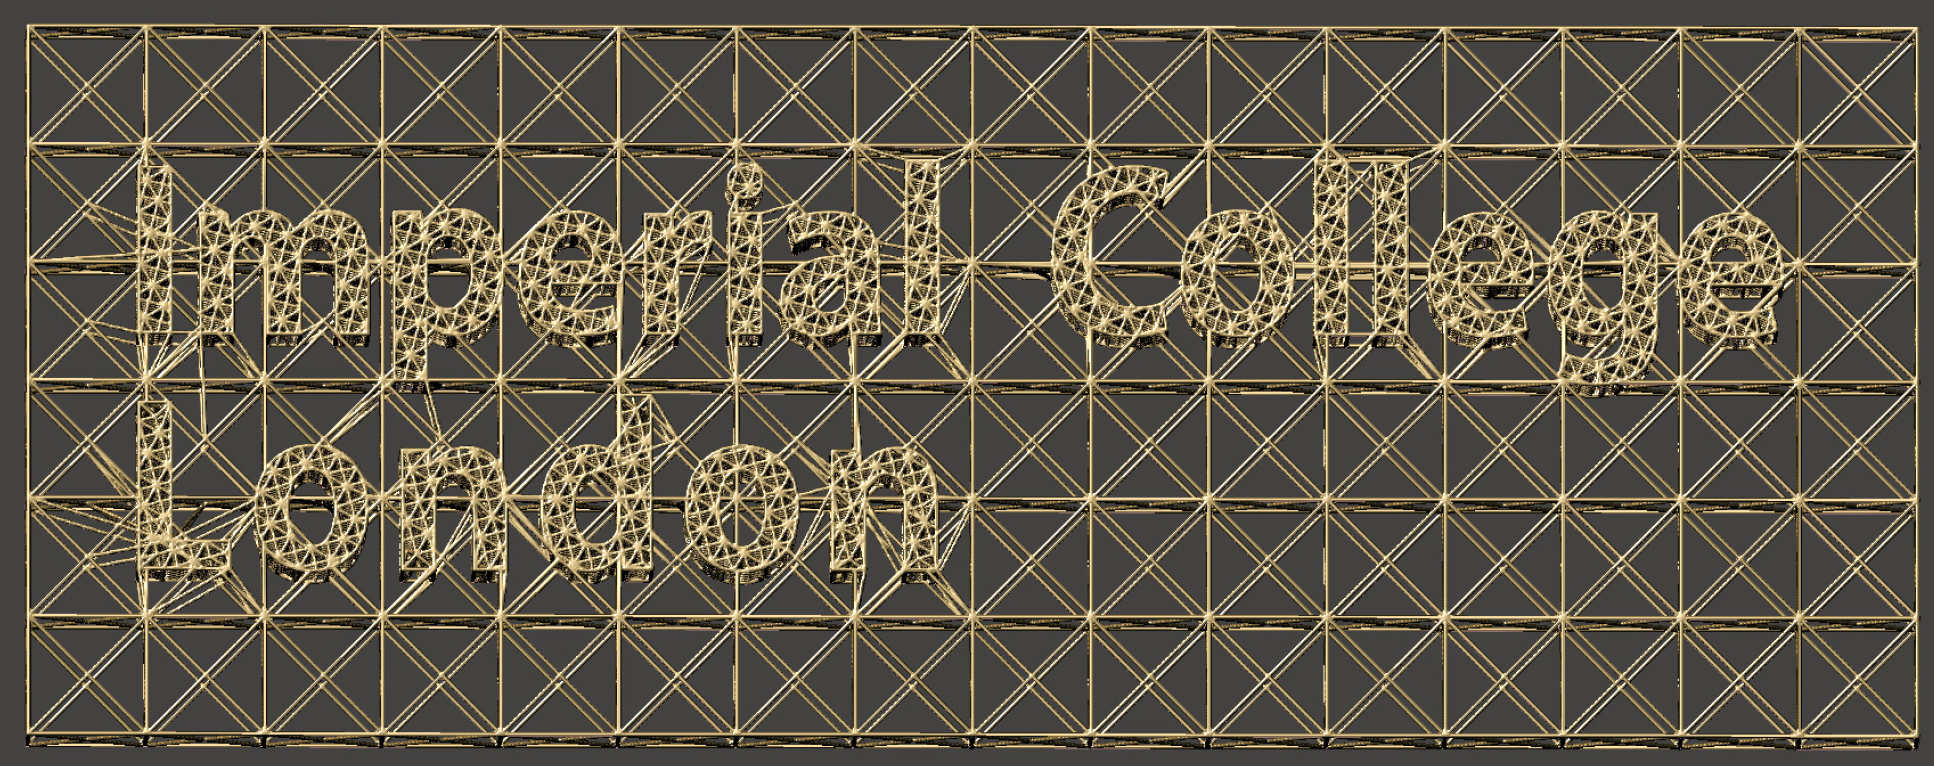 Imperial logo lattice